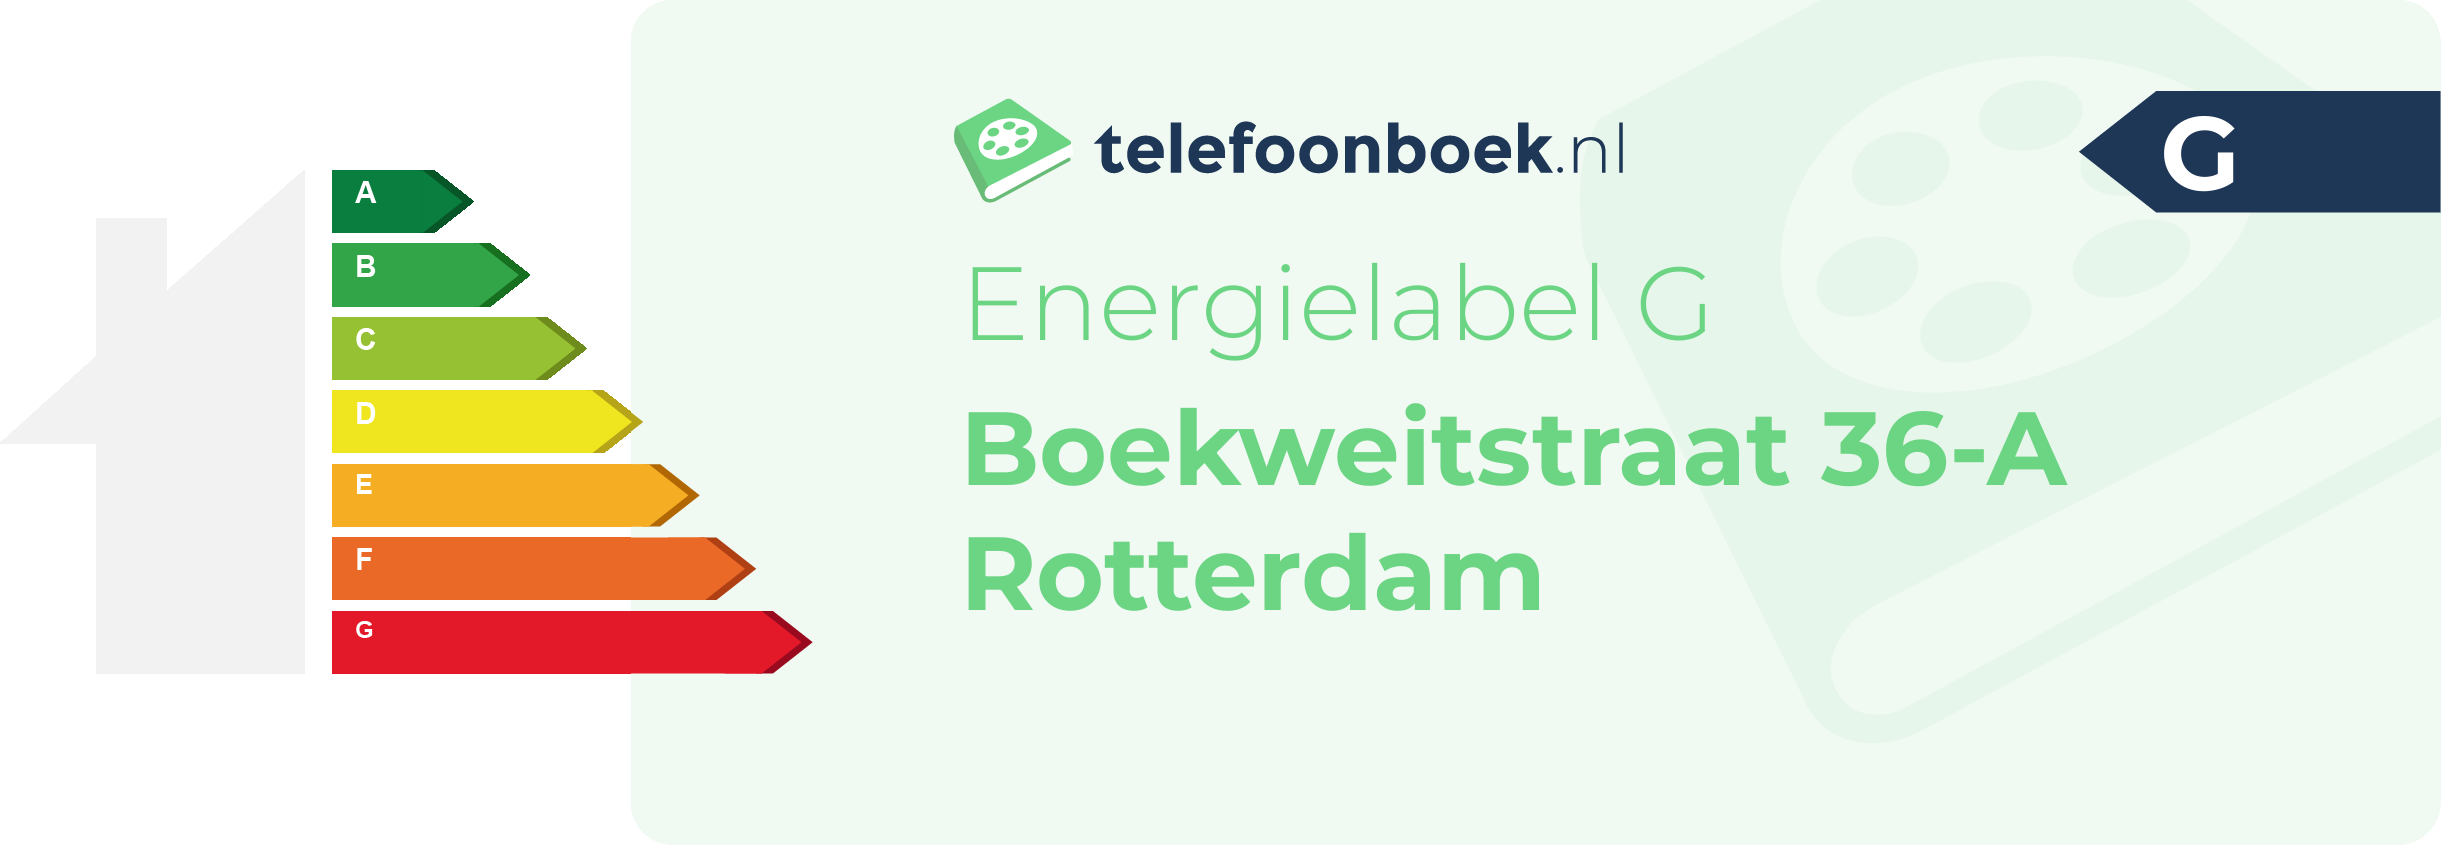 Energielabel Boekweitstraat 36-A Rotterdam